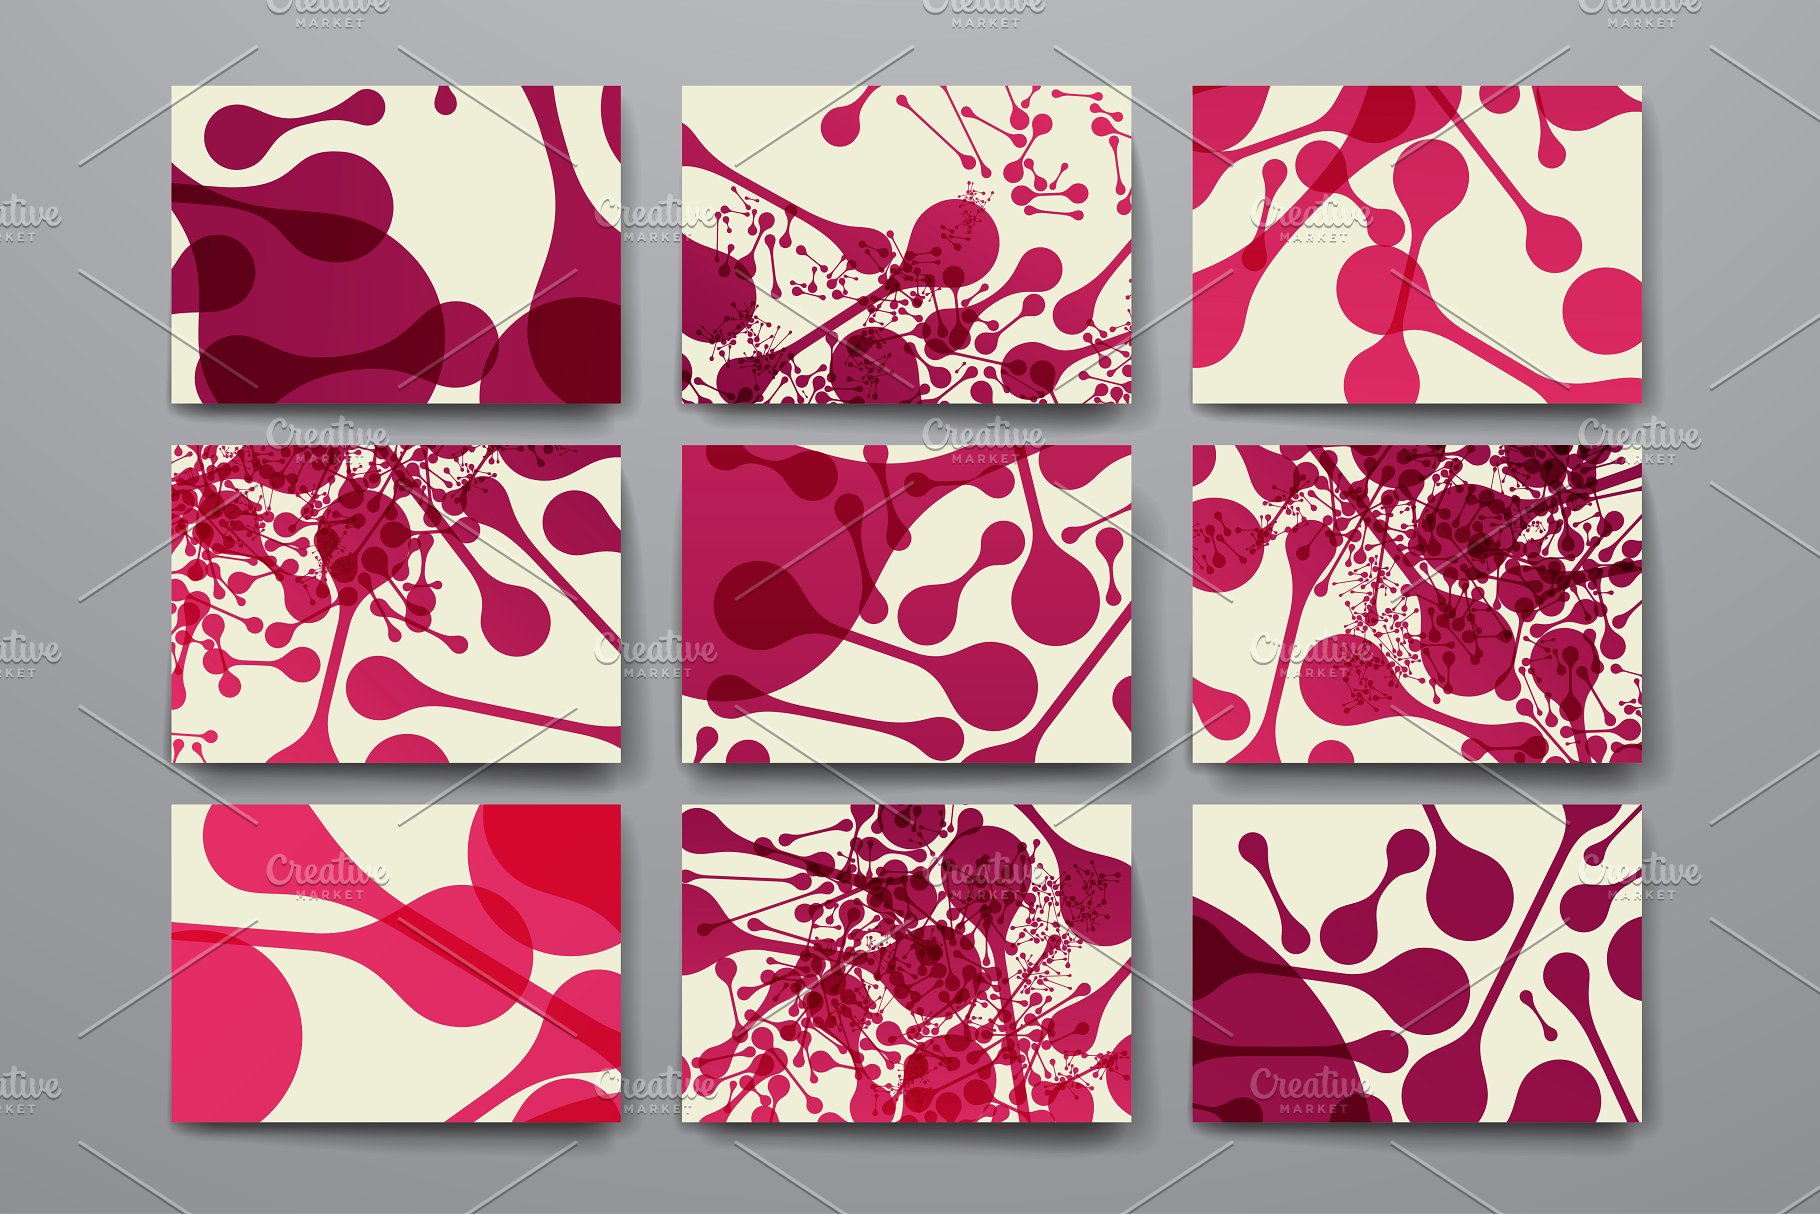 抽象几何图案背景纹理素材 Abstract Templates and Backgrounds插图(8)